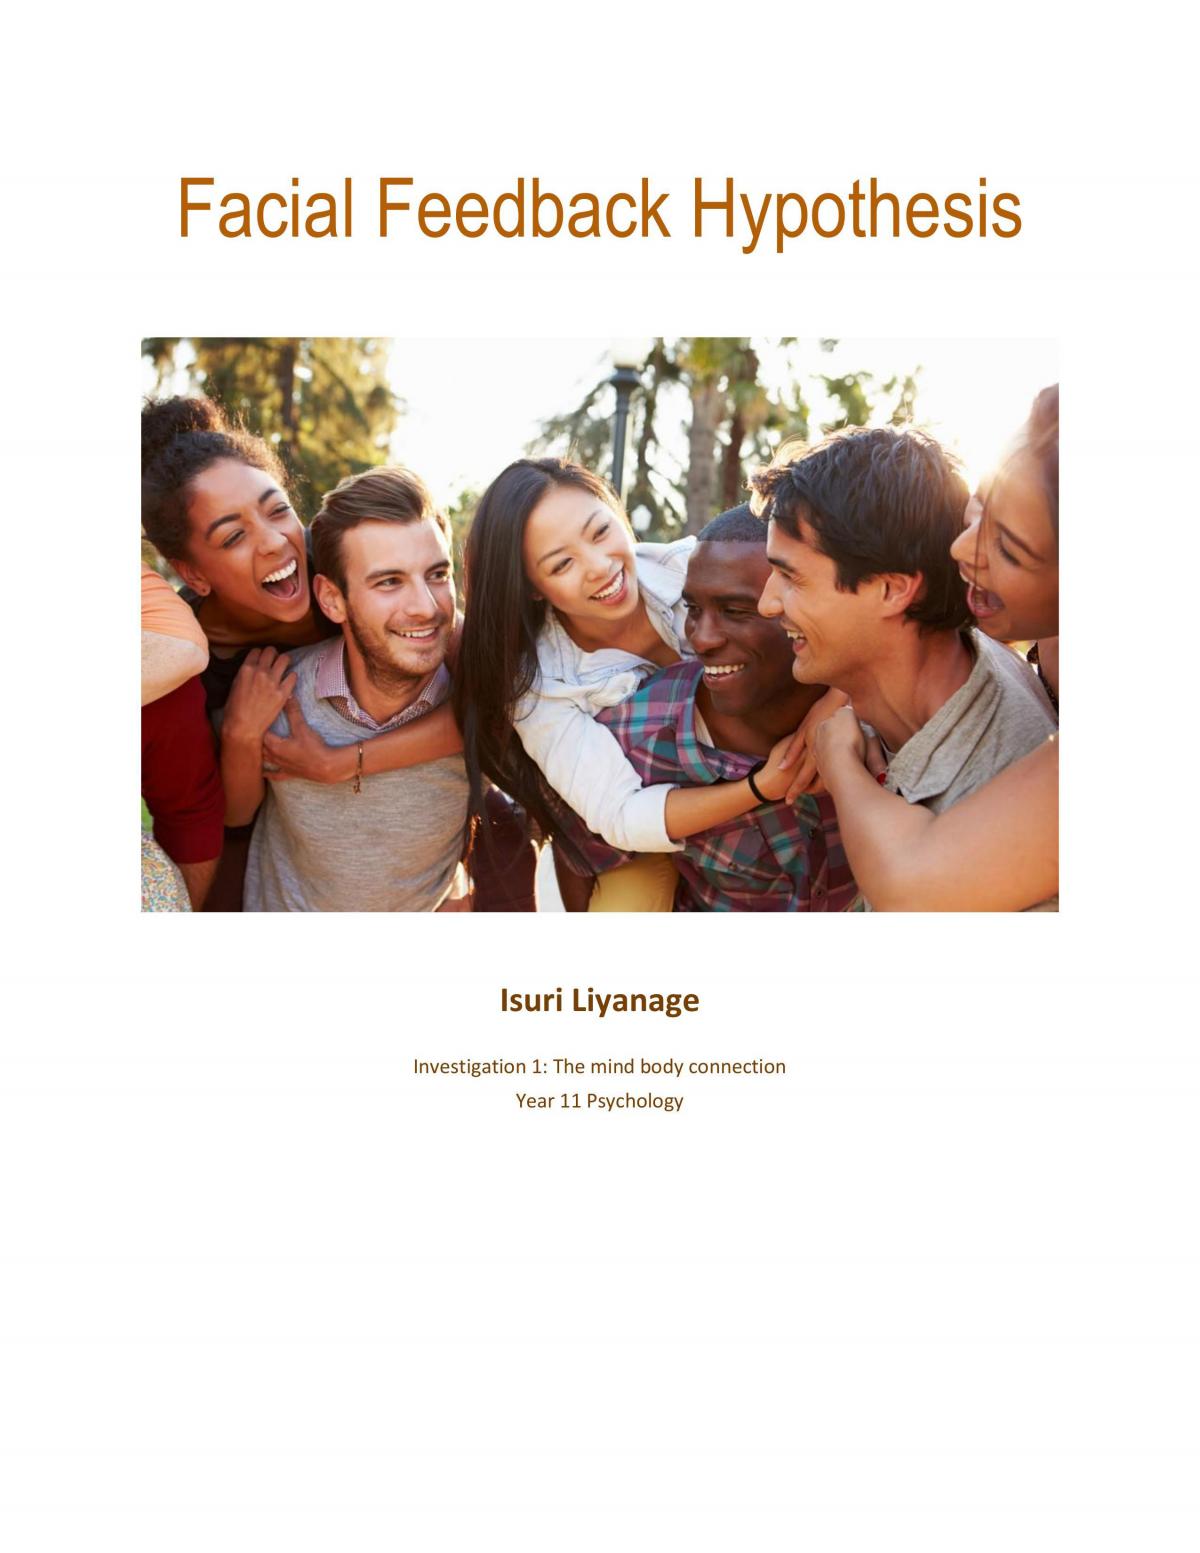 define facial feedback hypothesis in psychology